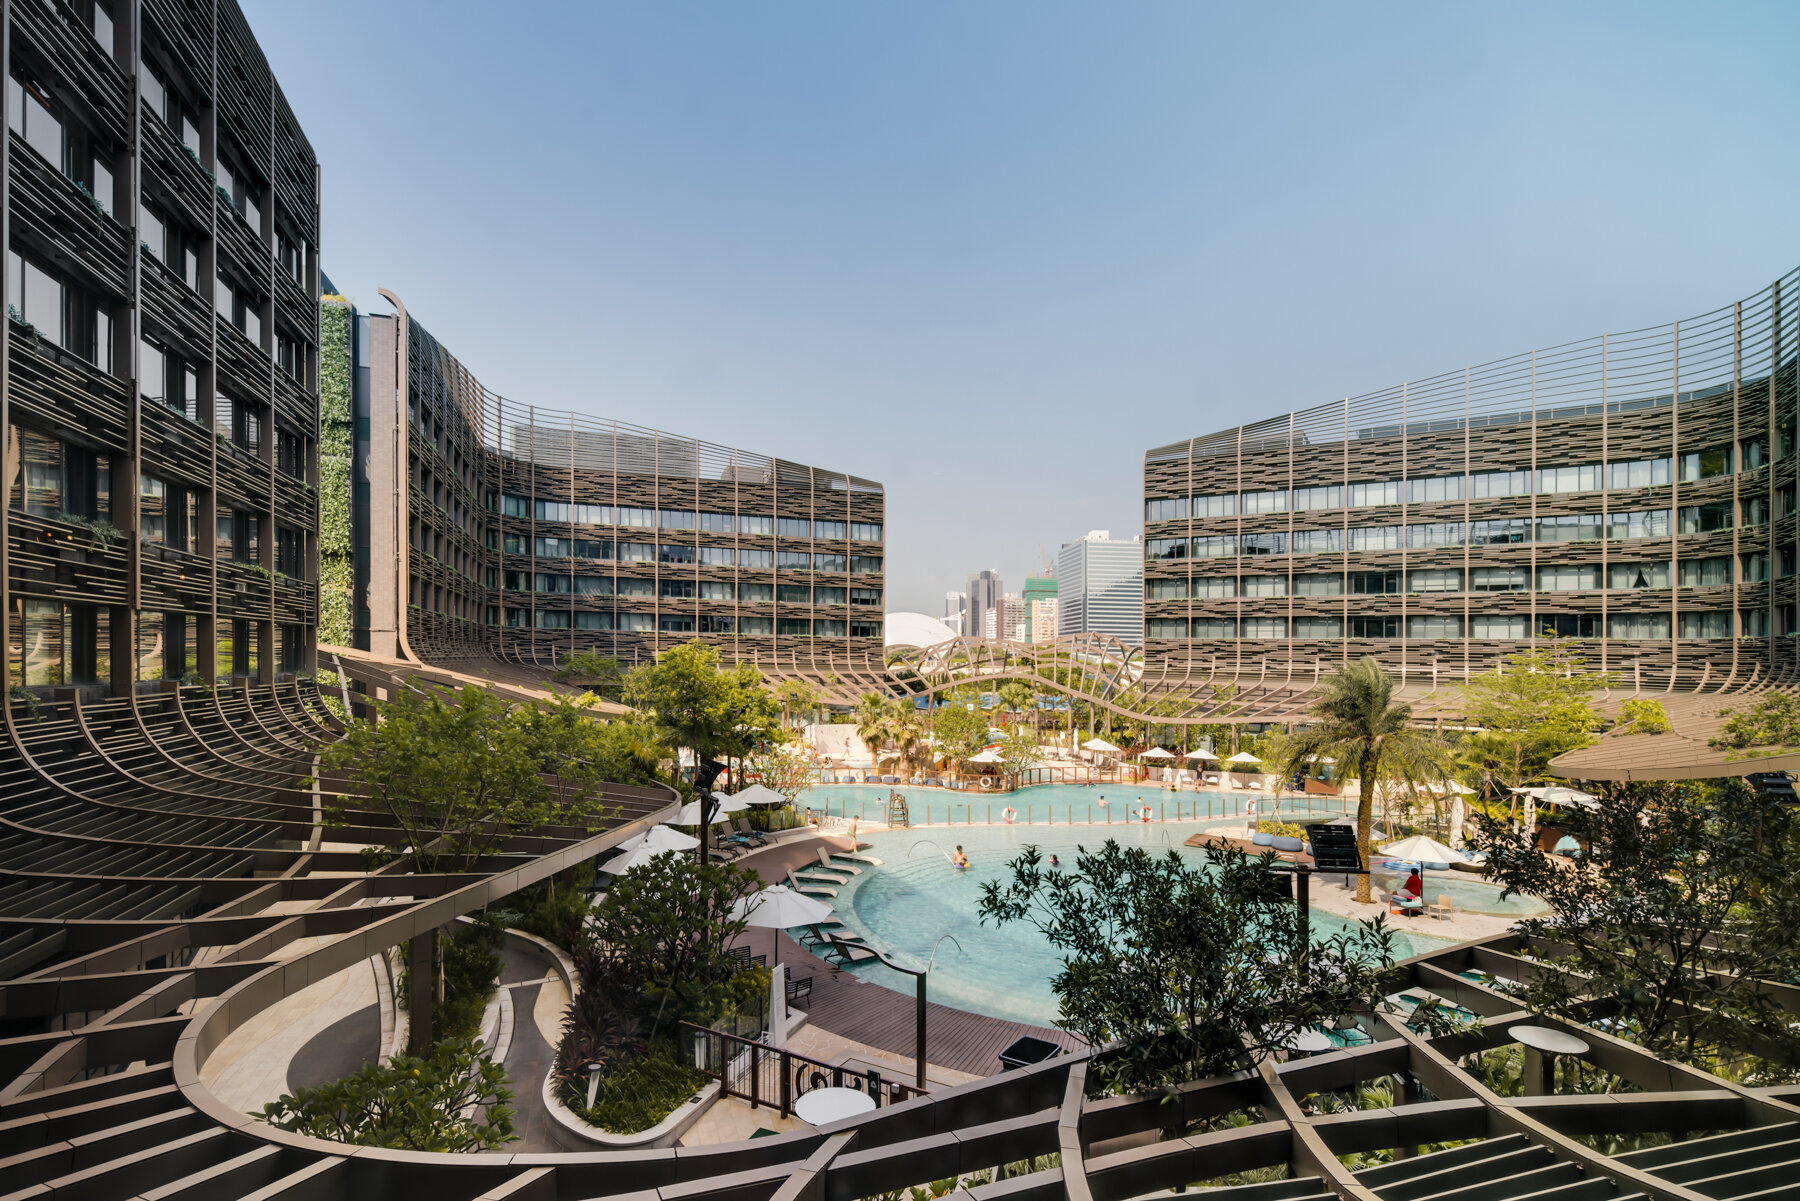  Marriott Ocean Park Hong Kong Developed by Marriott Hotels Designed by AedasHong Kong 